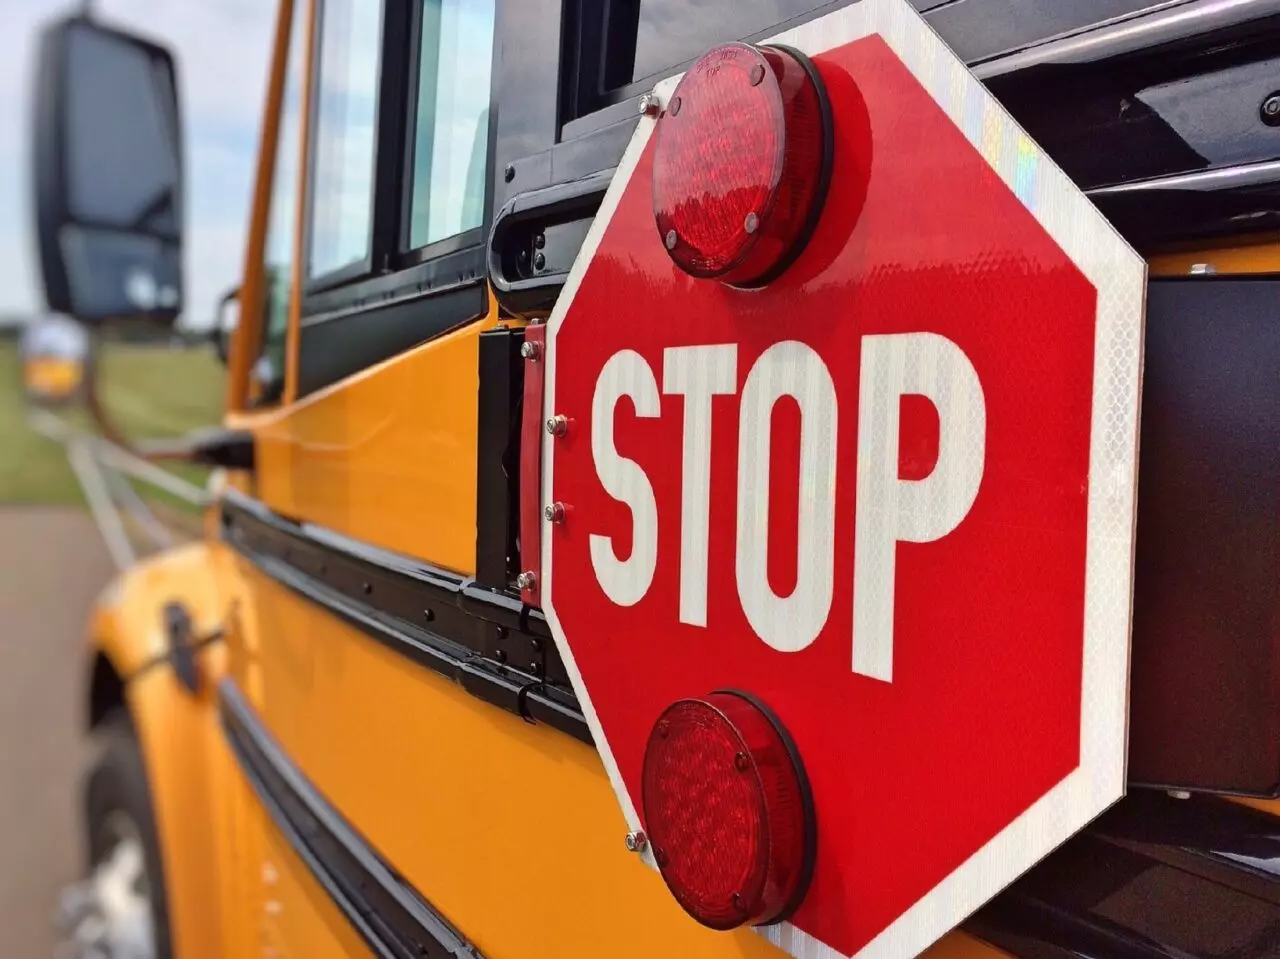 美国各州停让校车的交规和亲身教训